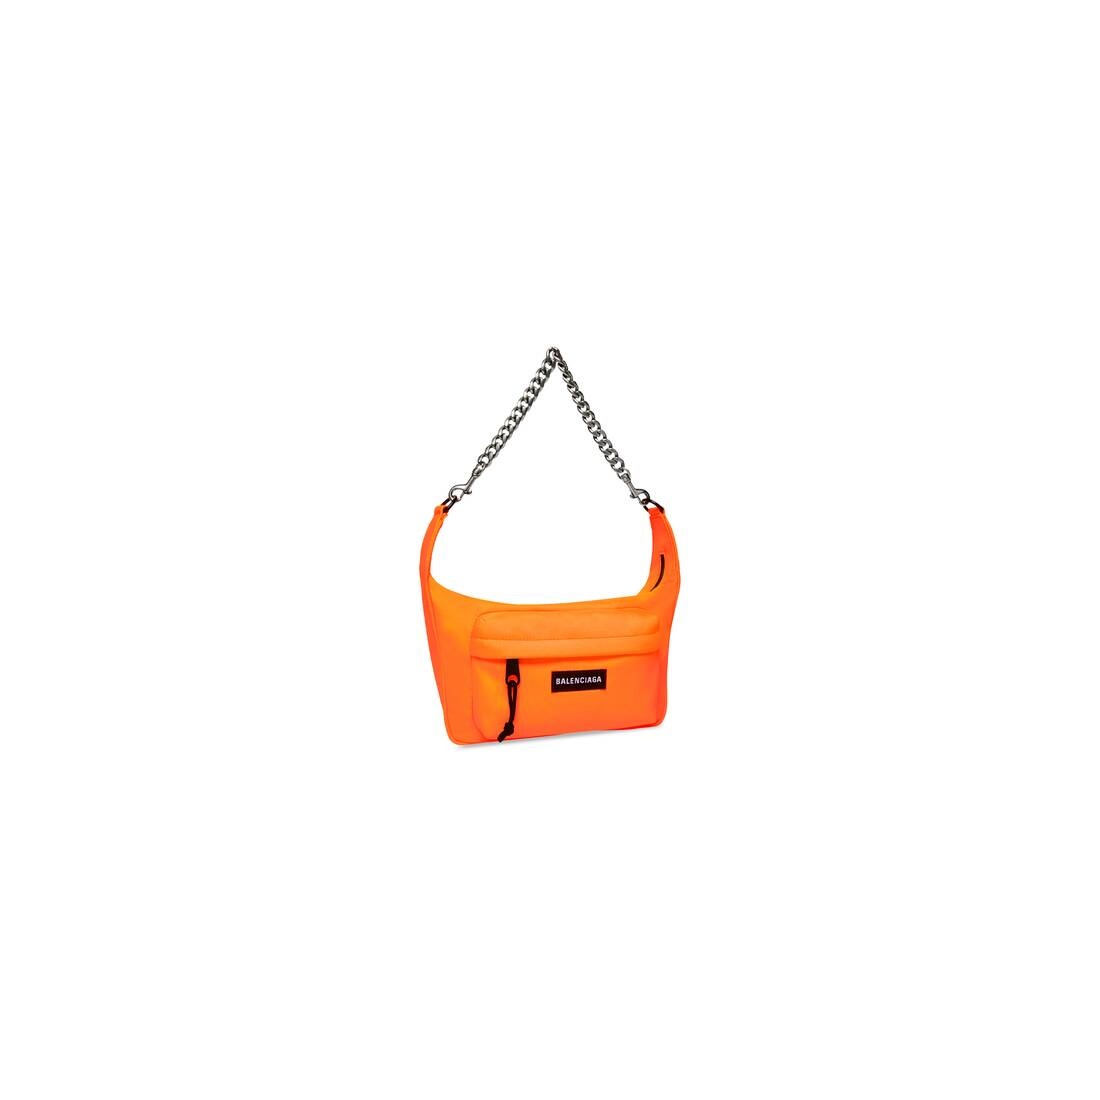 Raver Medium Bag With Chain in Fluo Orange - 5